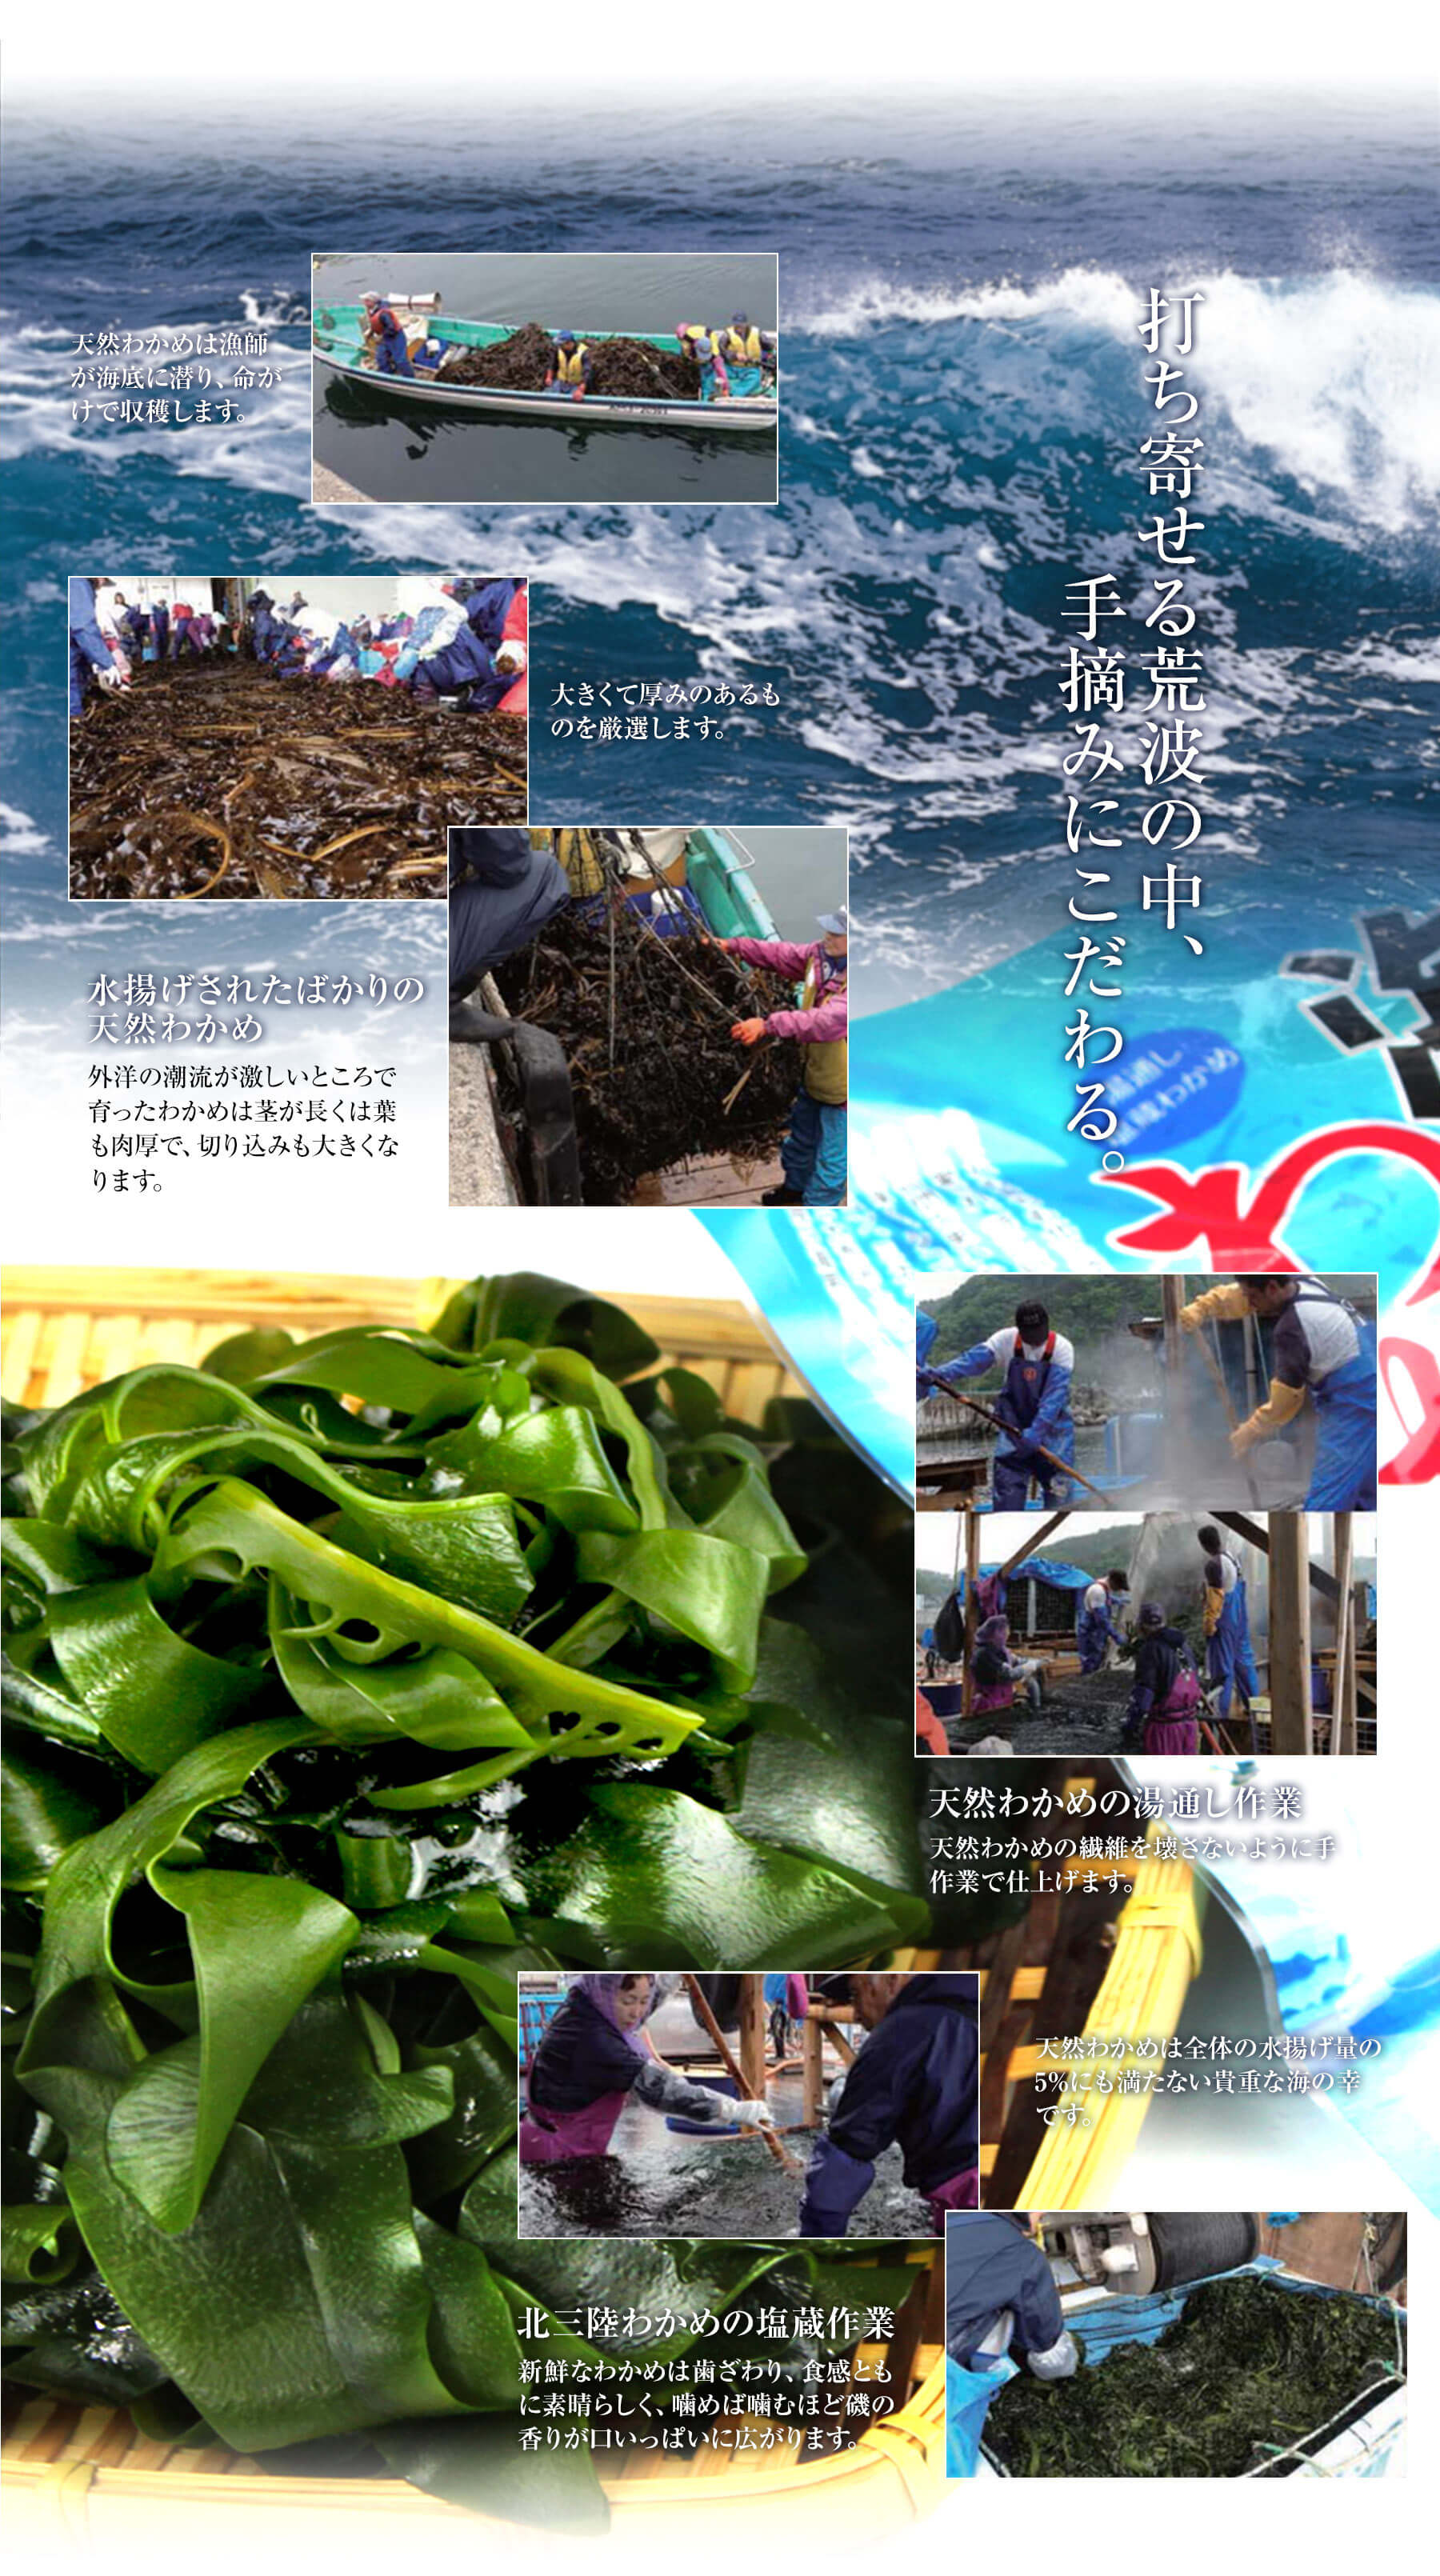 田清の海草サラダ 40g 三陸わかめと6種の海藻 ネコポス発送